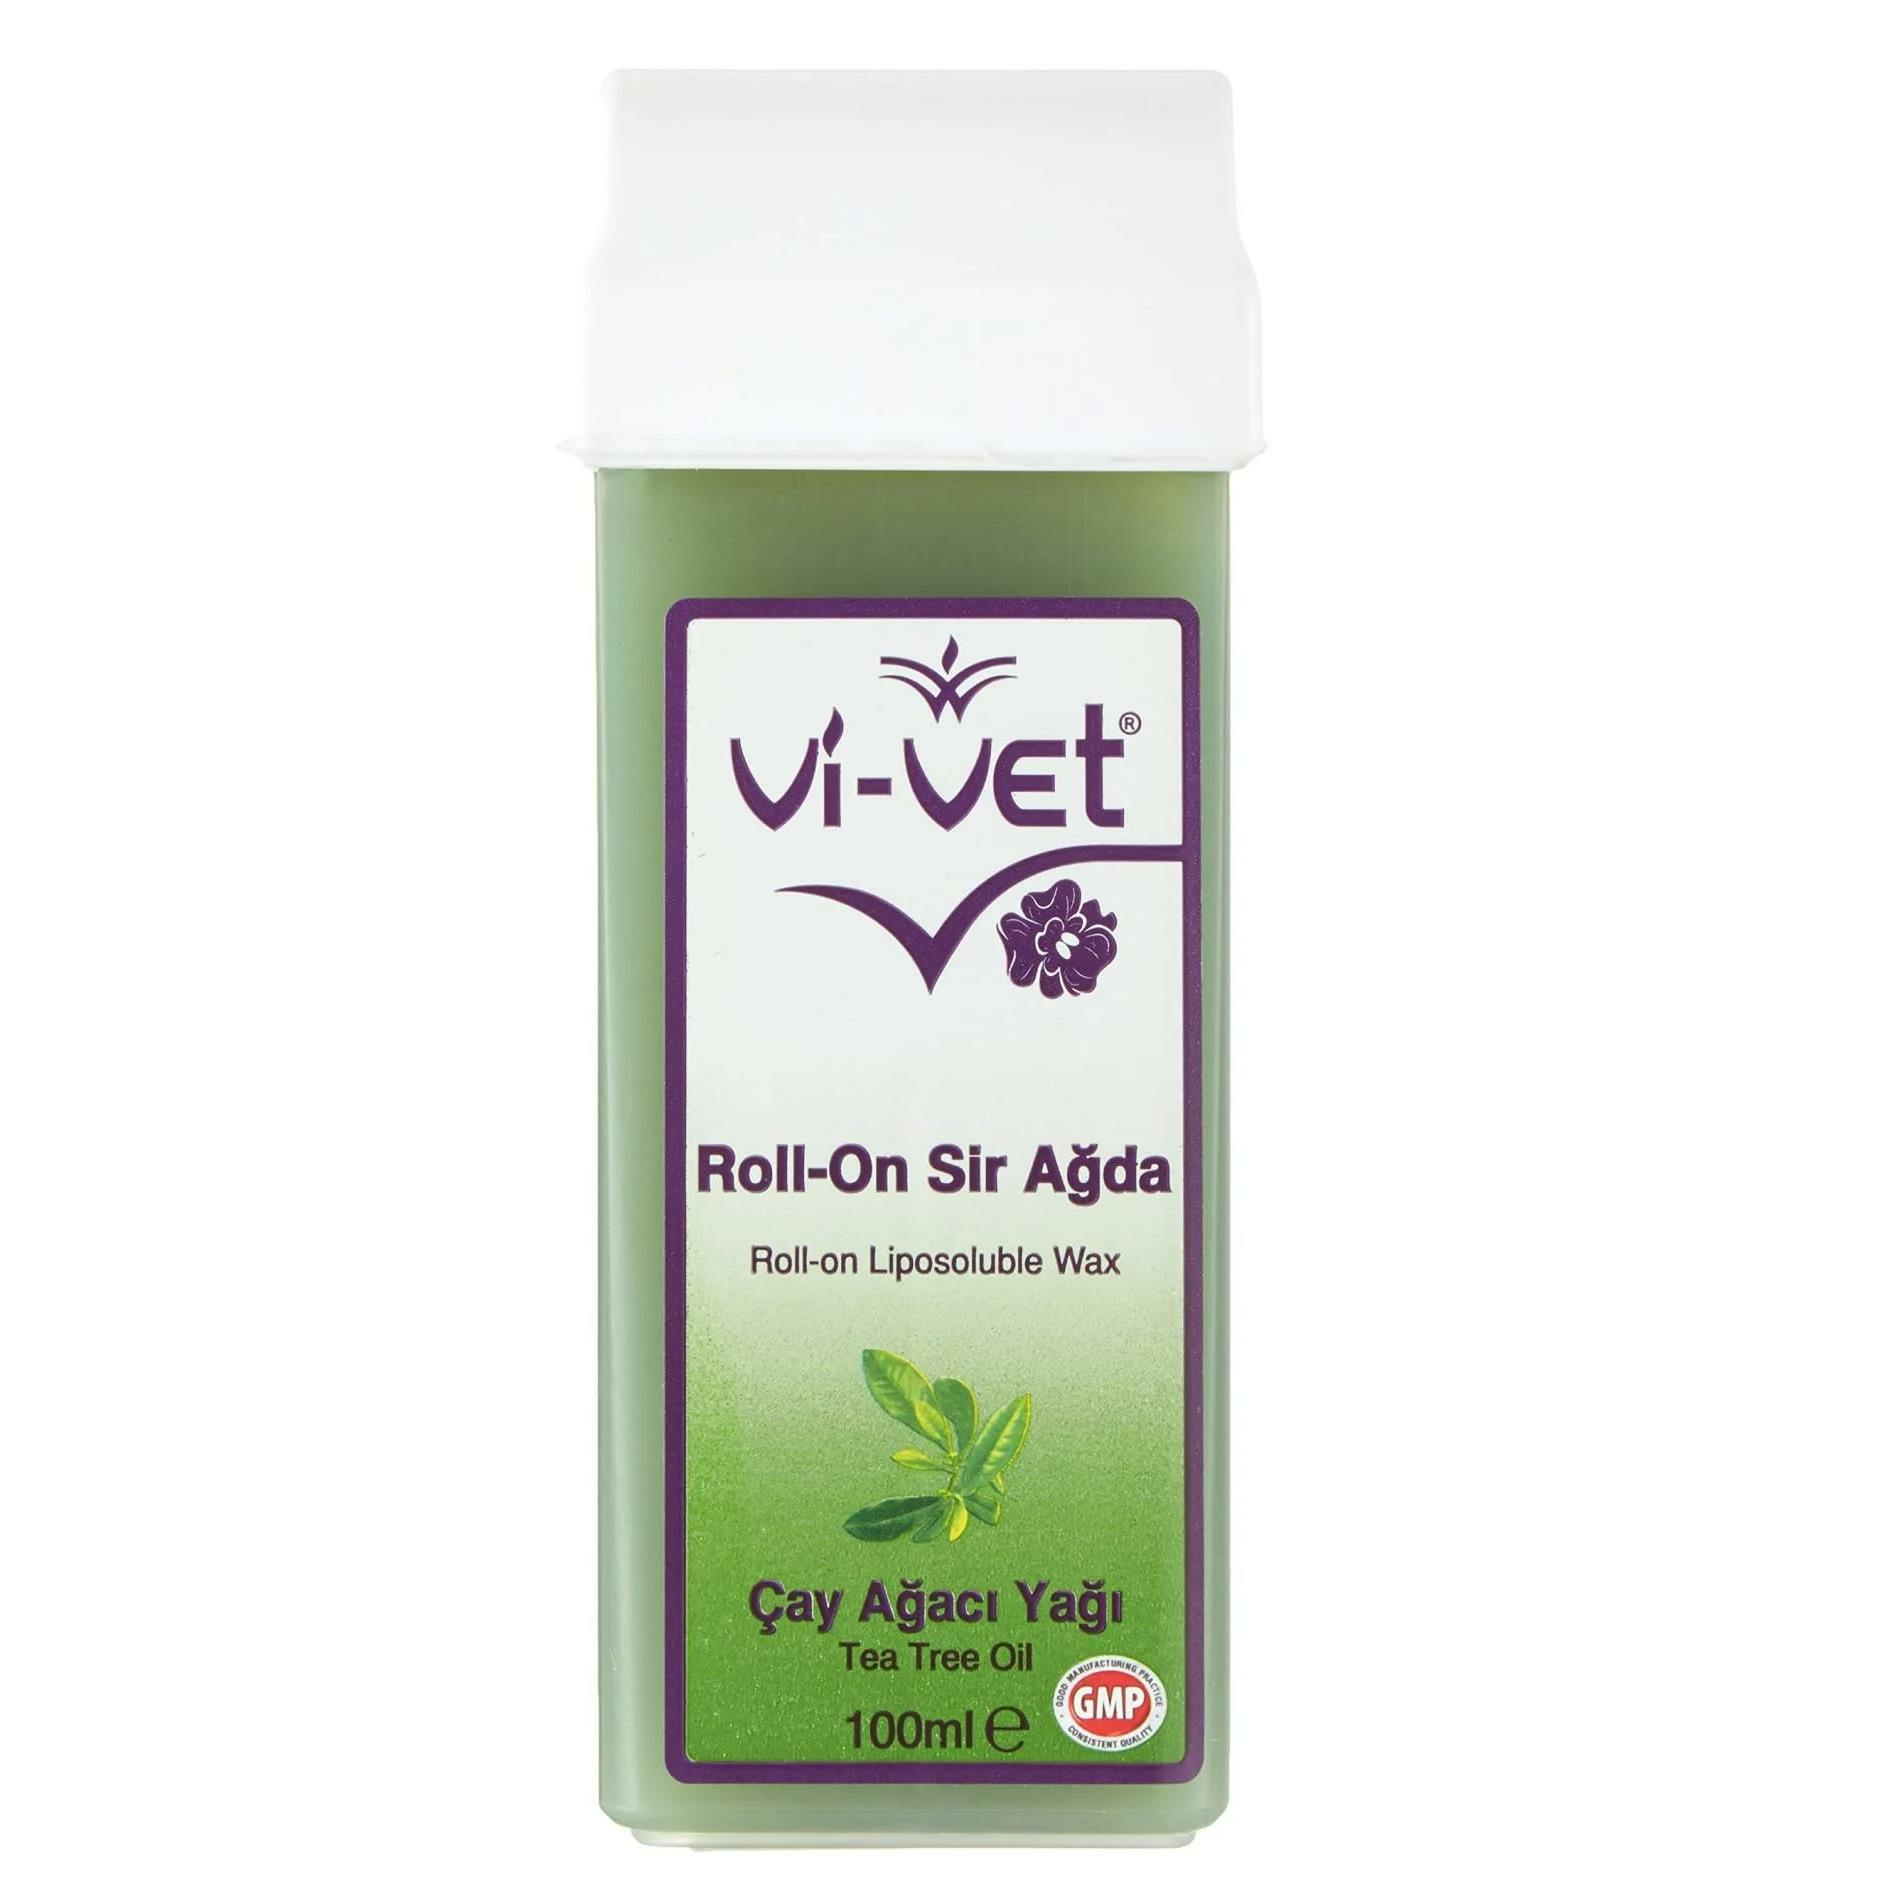 Vi-Vet Roll-On Sir Ağda 100 ml Çay Ağacı Yağı